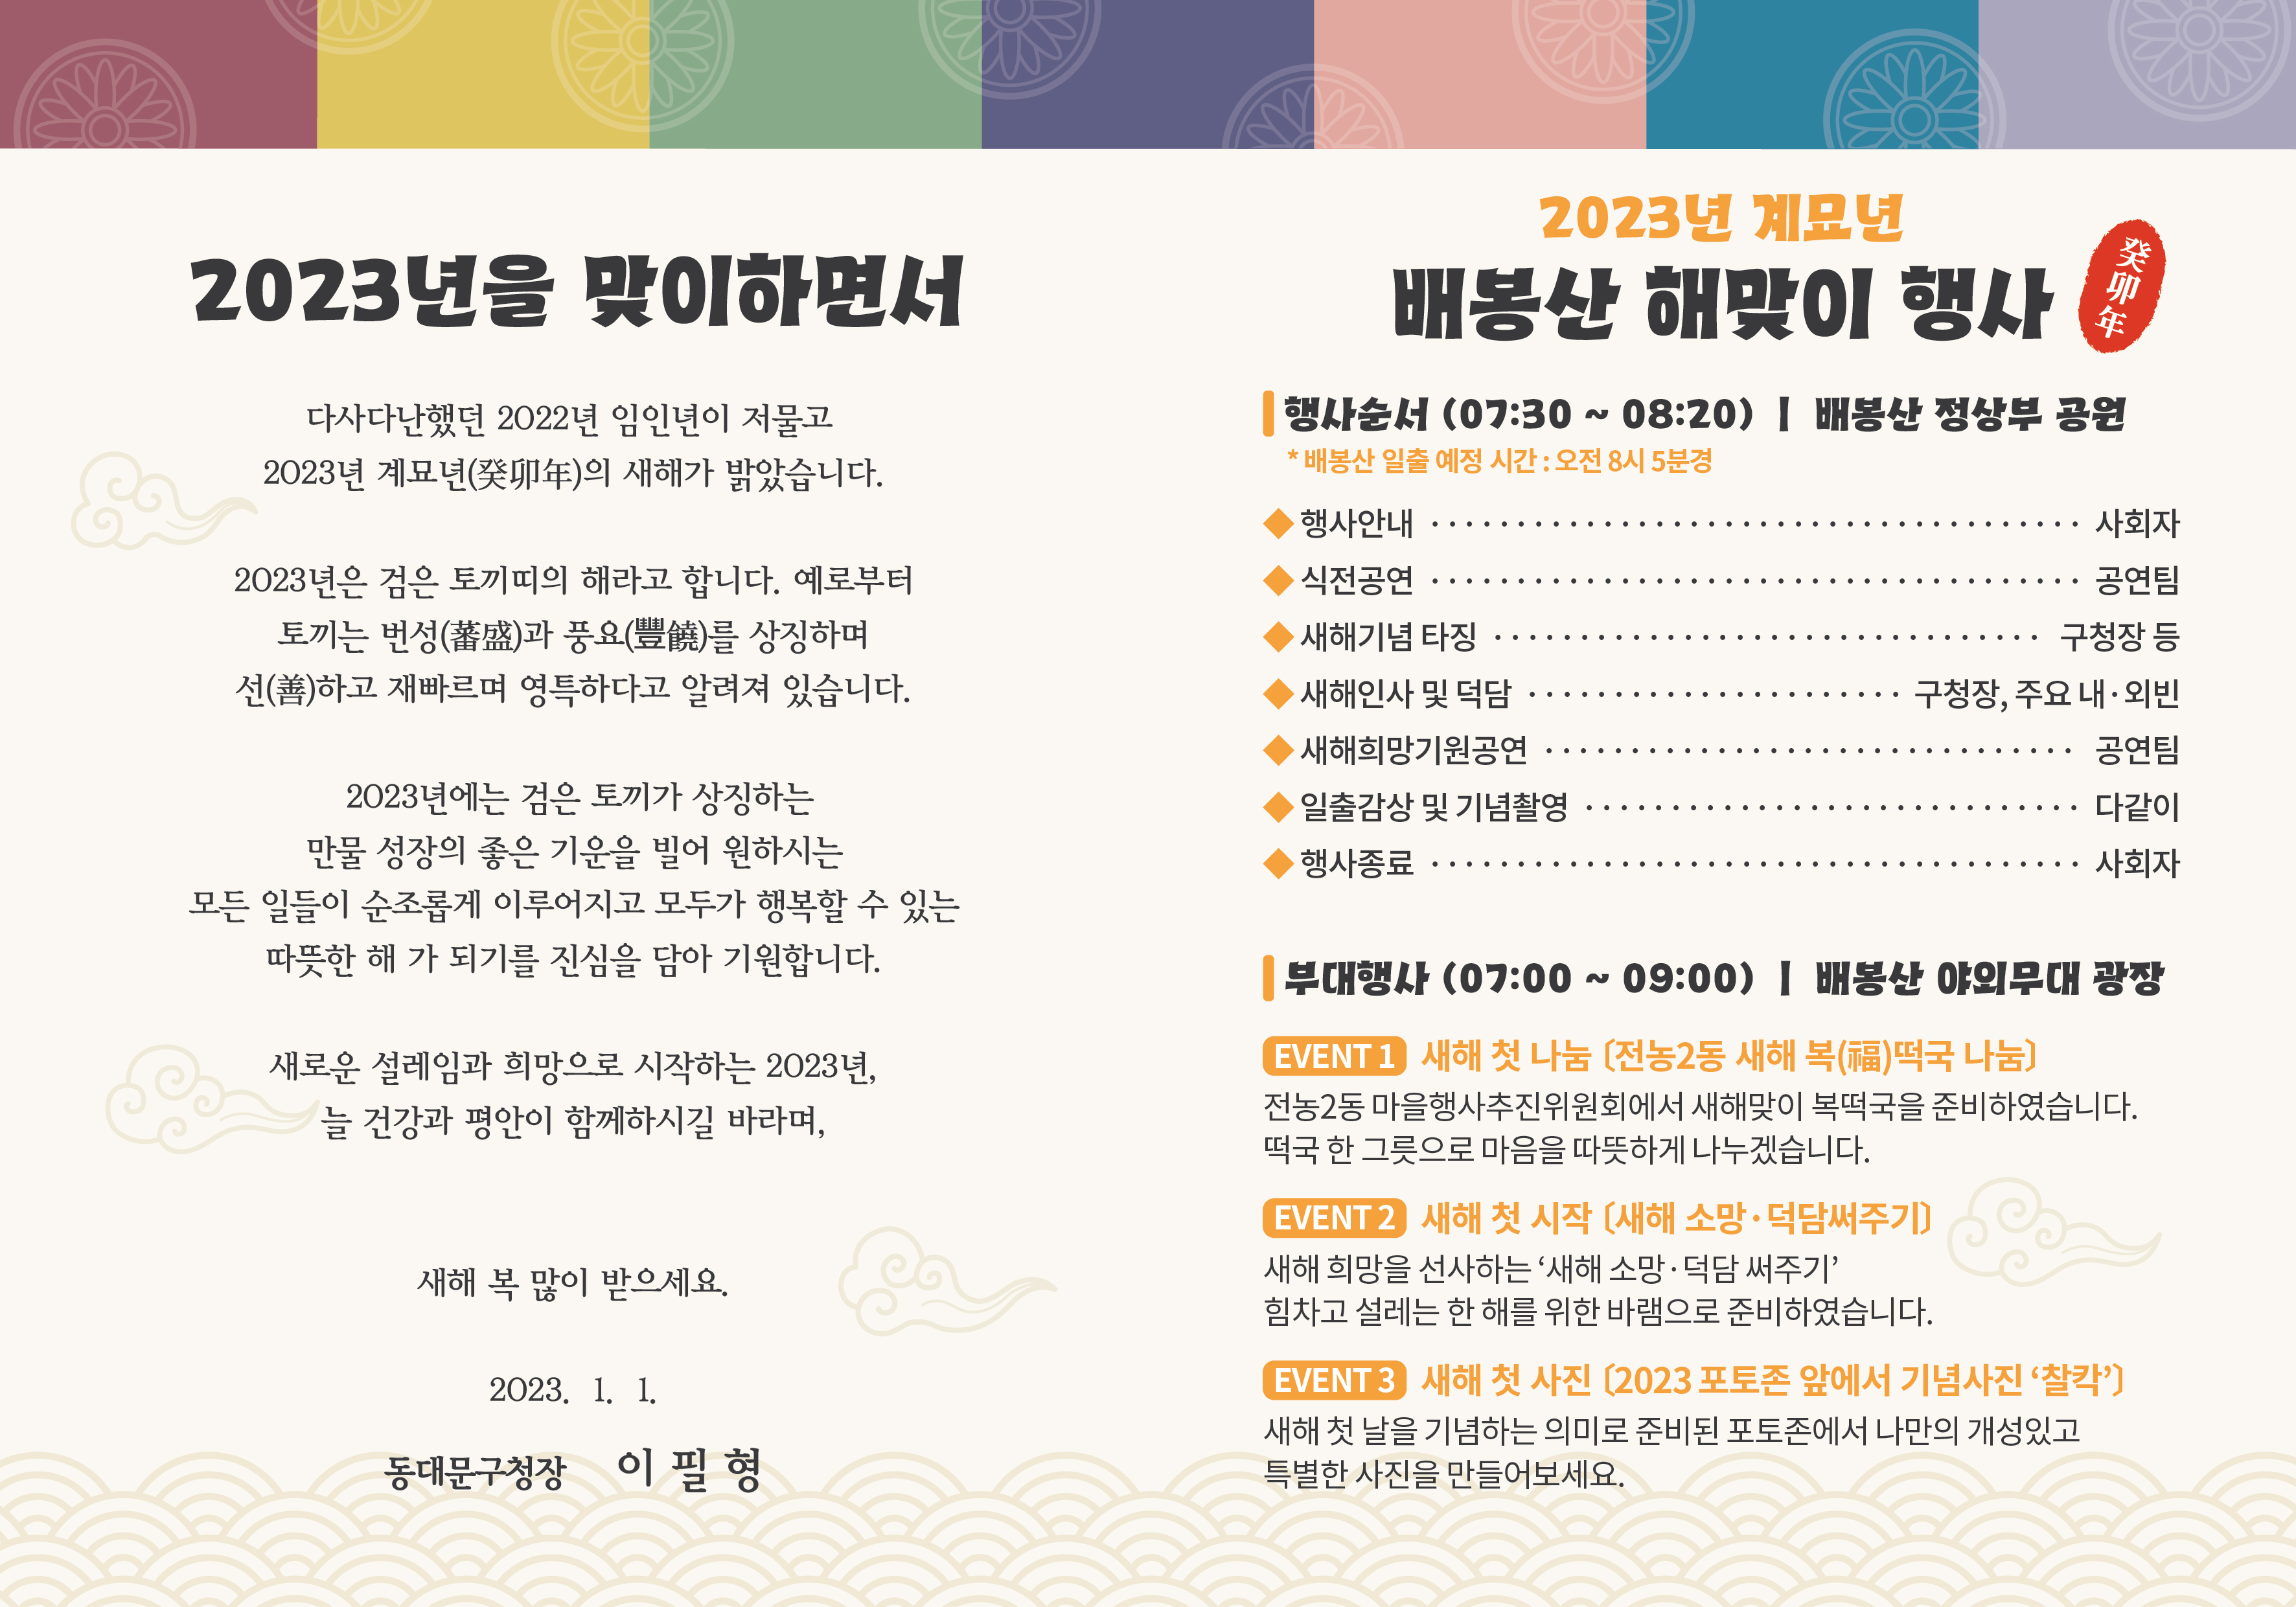 2023 배봉산 해맞이 행사 개최 이미지 3 - 본문에 자세한설명을 제공합니다.